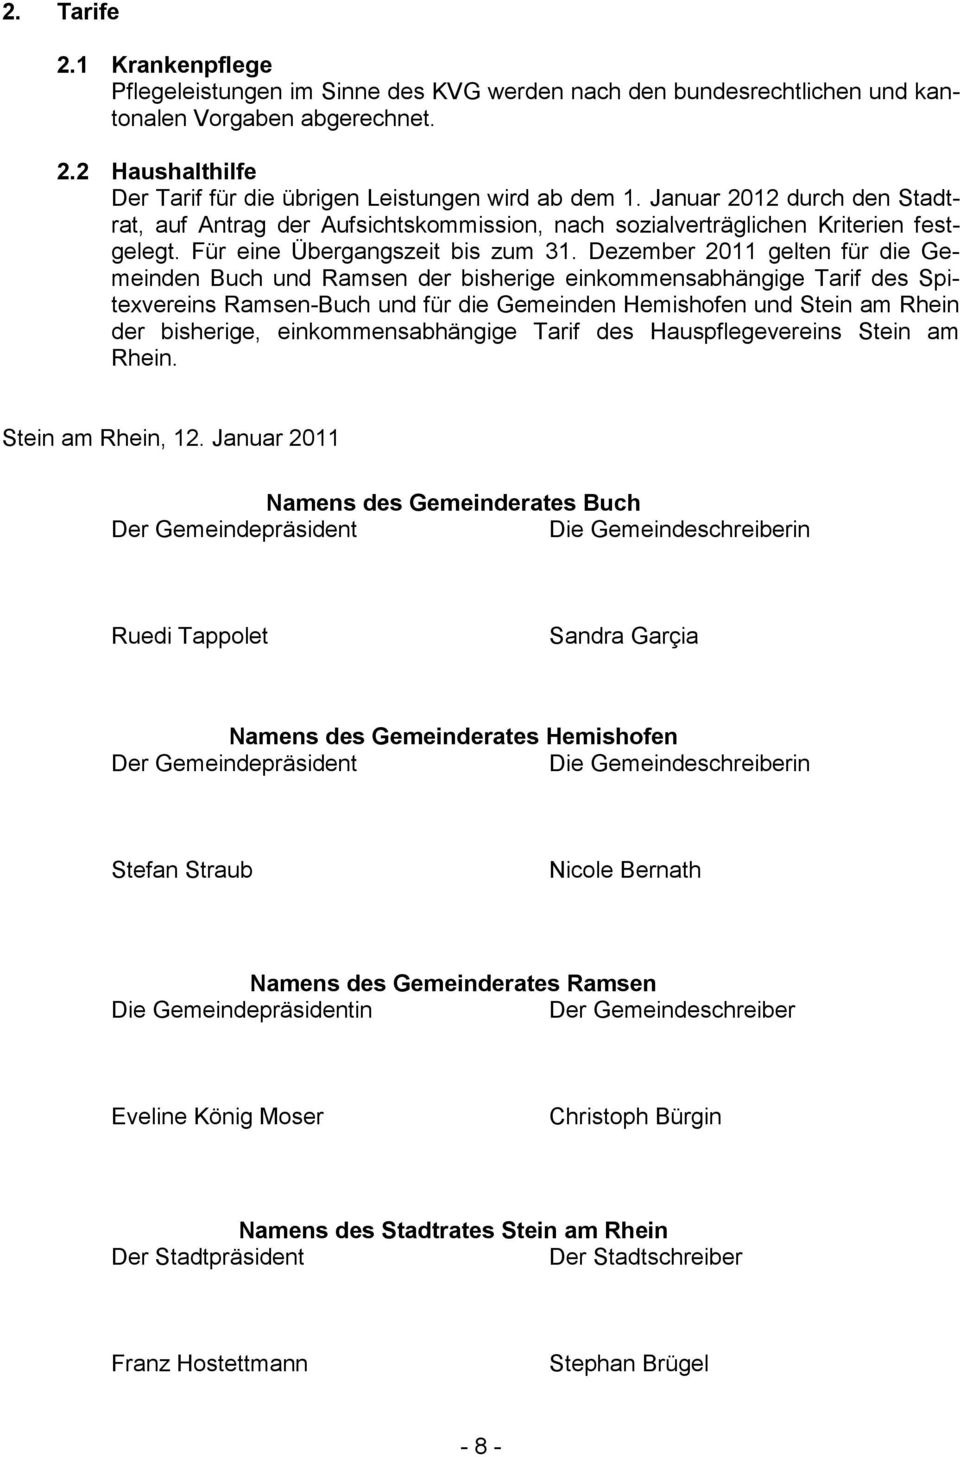 Dezember 2011 gelten für die Gemeinden Buch und Ramsen der bisherige einkommensabhängige Tarif des Spitexvereins Ramsen-Buch und für die Gemeinden Hemishofen und Stein am Rhein der bisherige,